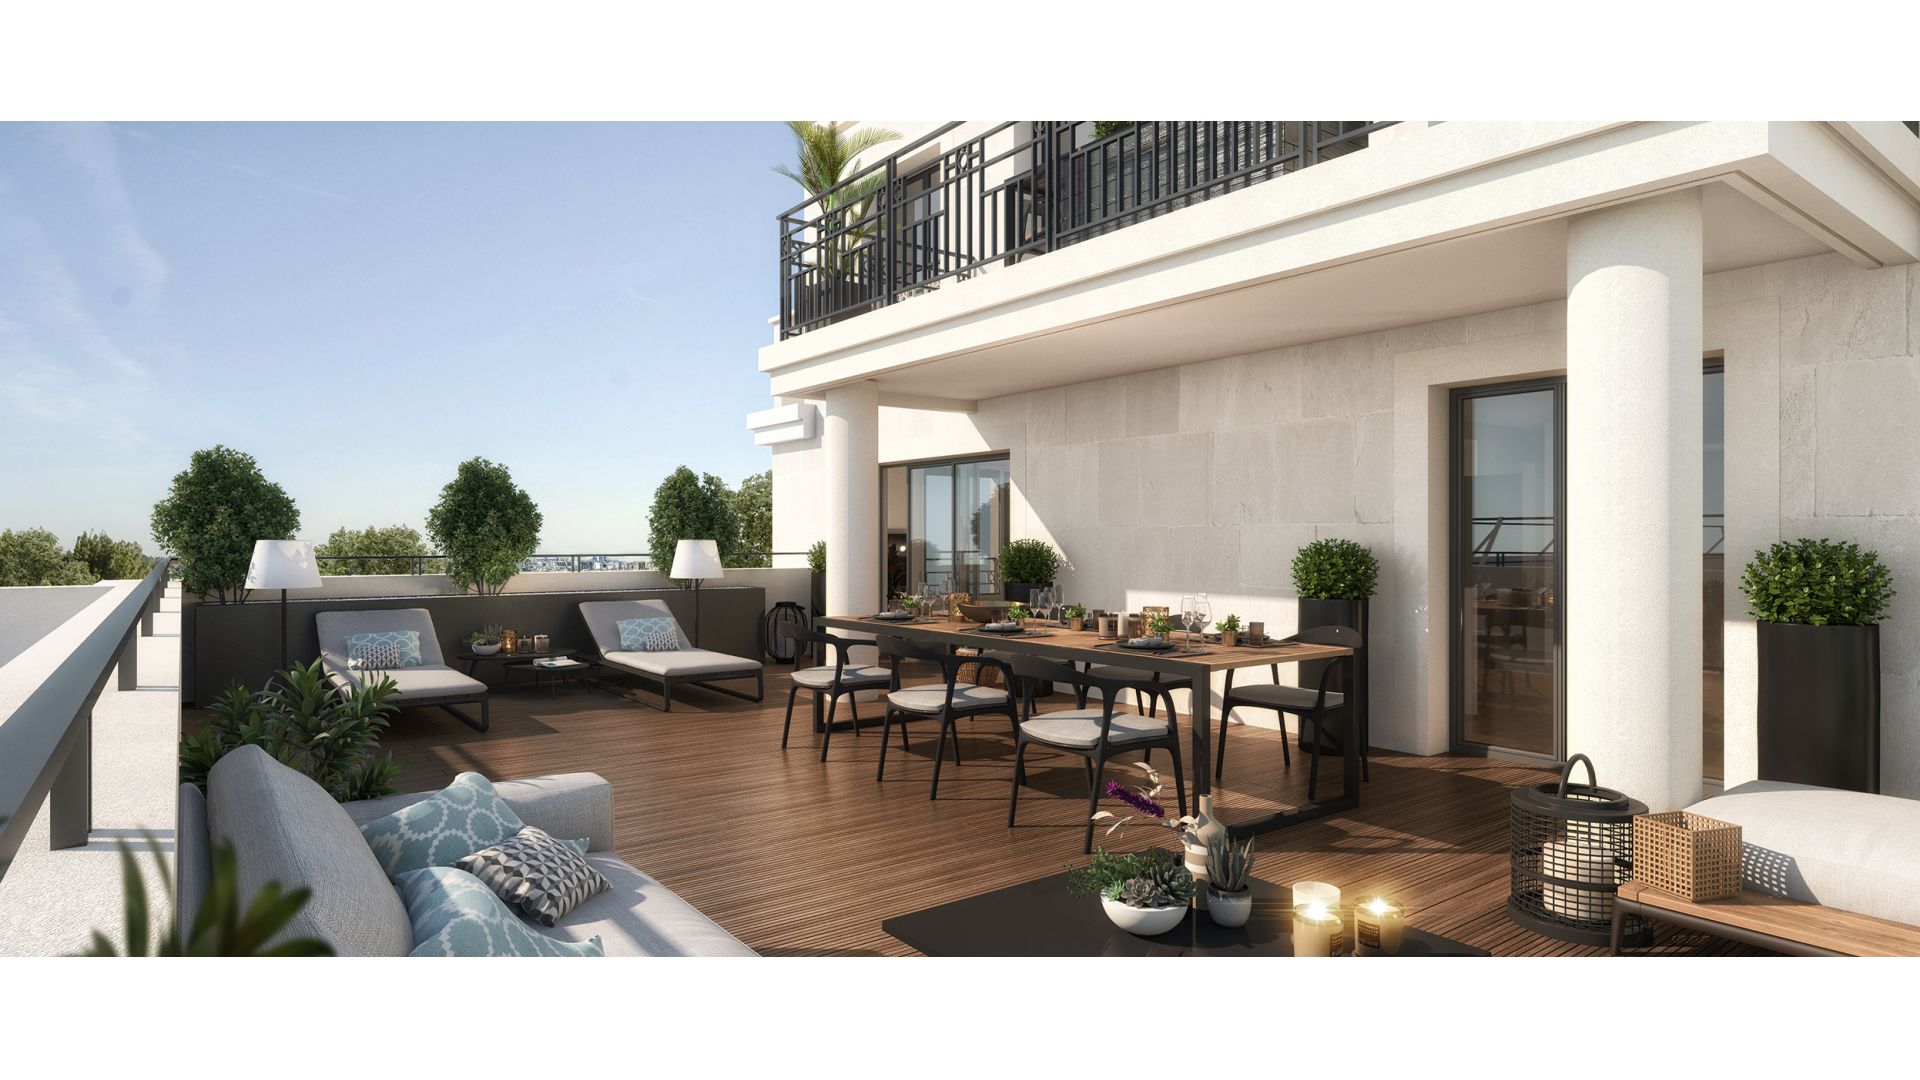 Greencity immobilier - achat appartements neufs du T1 au T4 - Résidence Le Boréal - 94170 - Le Perreux-sur-Marne - vue terrasse